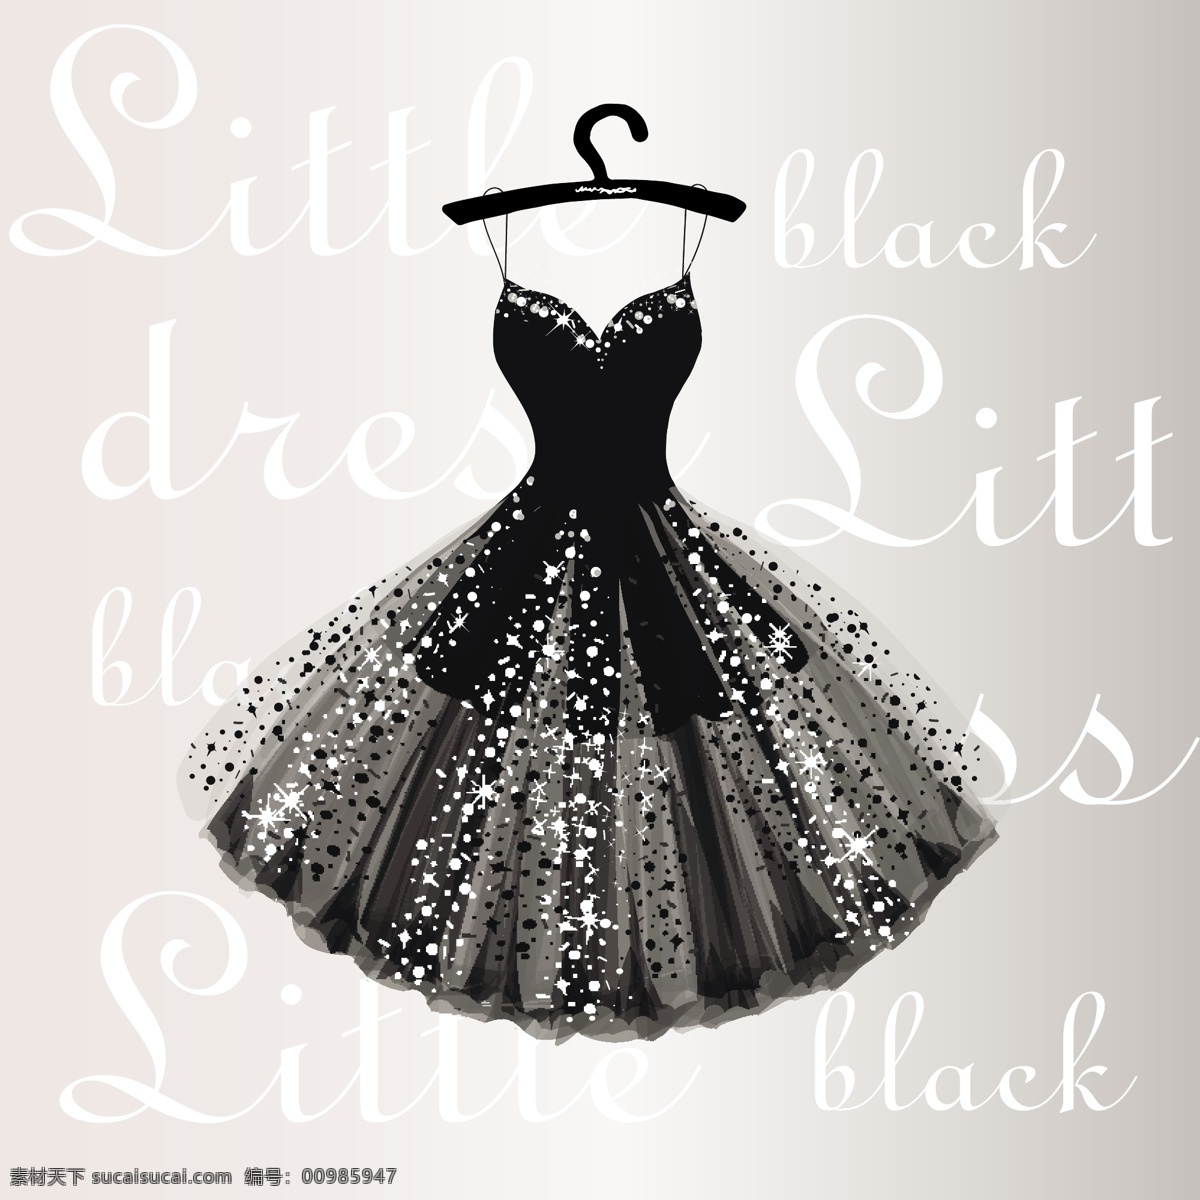 黑色 晚礼服 裙子 矢量素材 服装 服饰 时装 女装 裙装 衣架